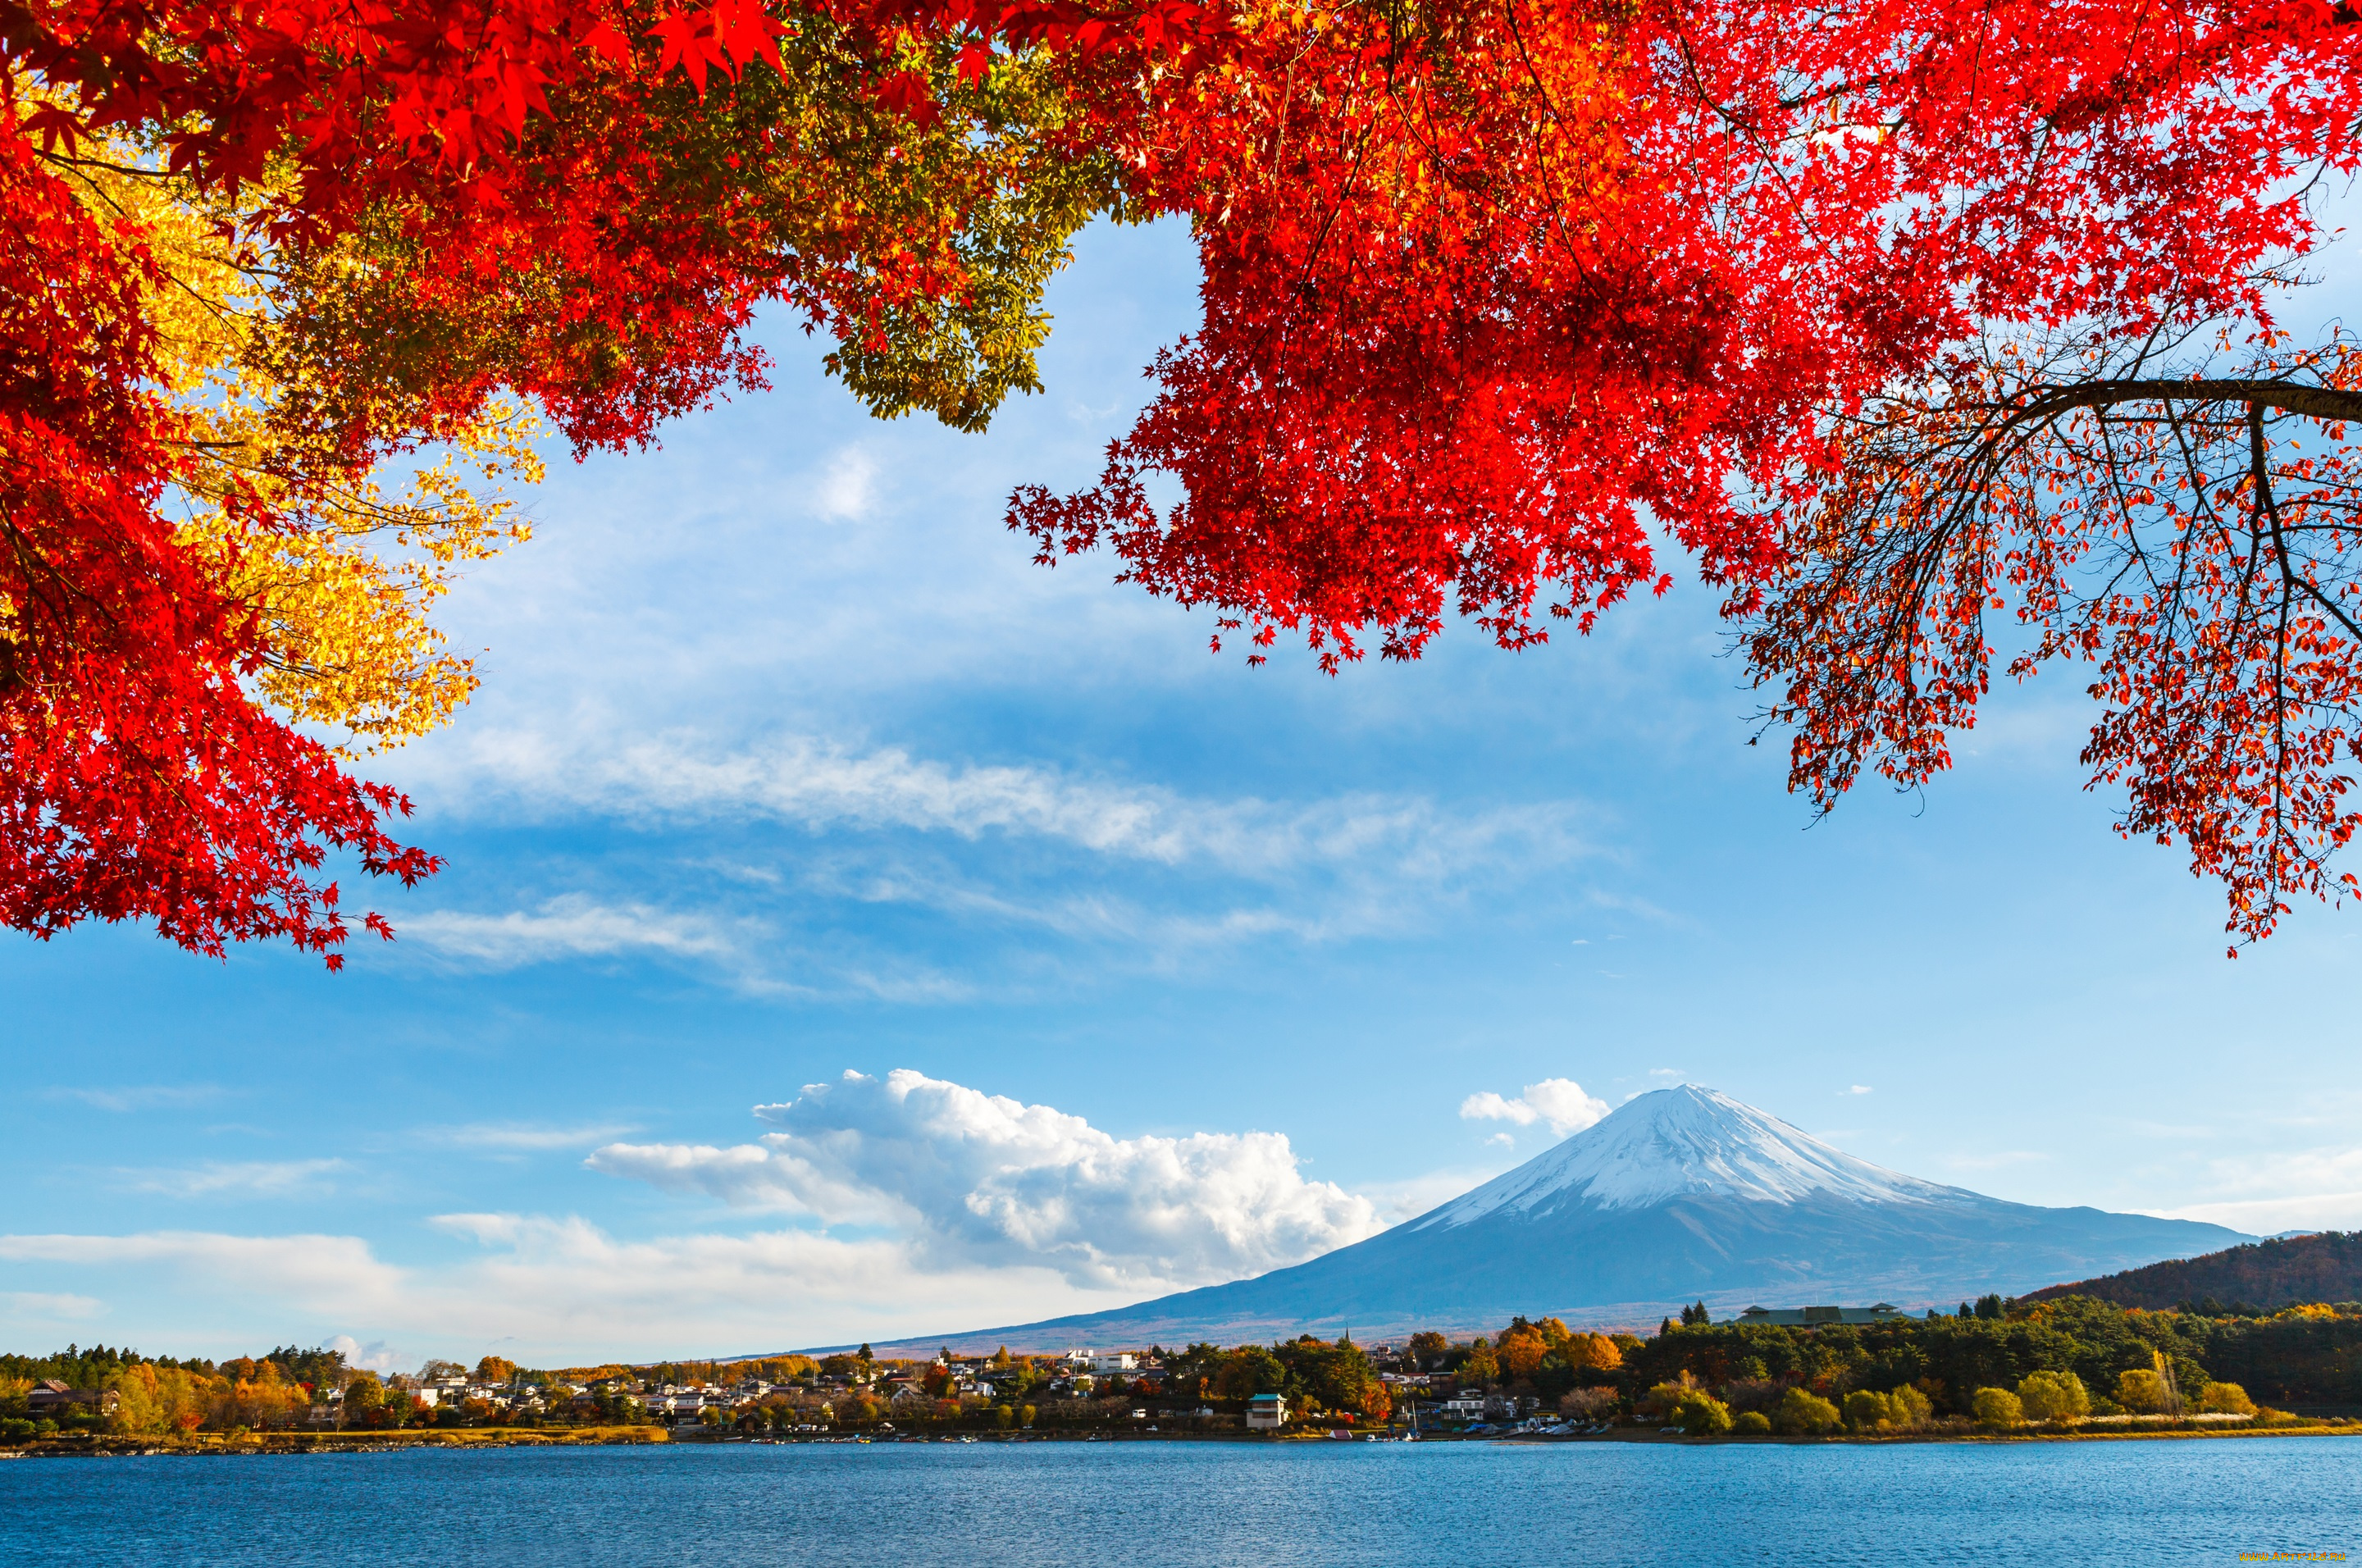 природа, пейзажи, облака, небо, озеро, деревья, гора, осень, фудзияма, япония, листья, снег